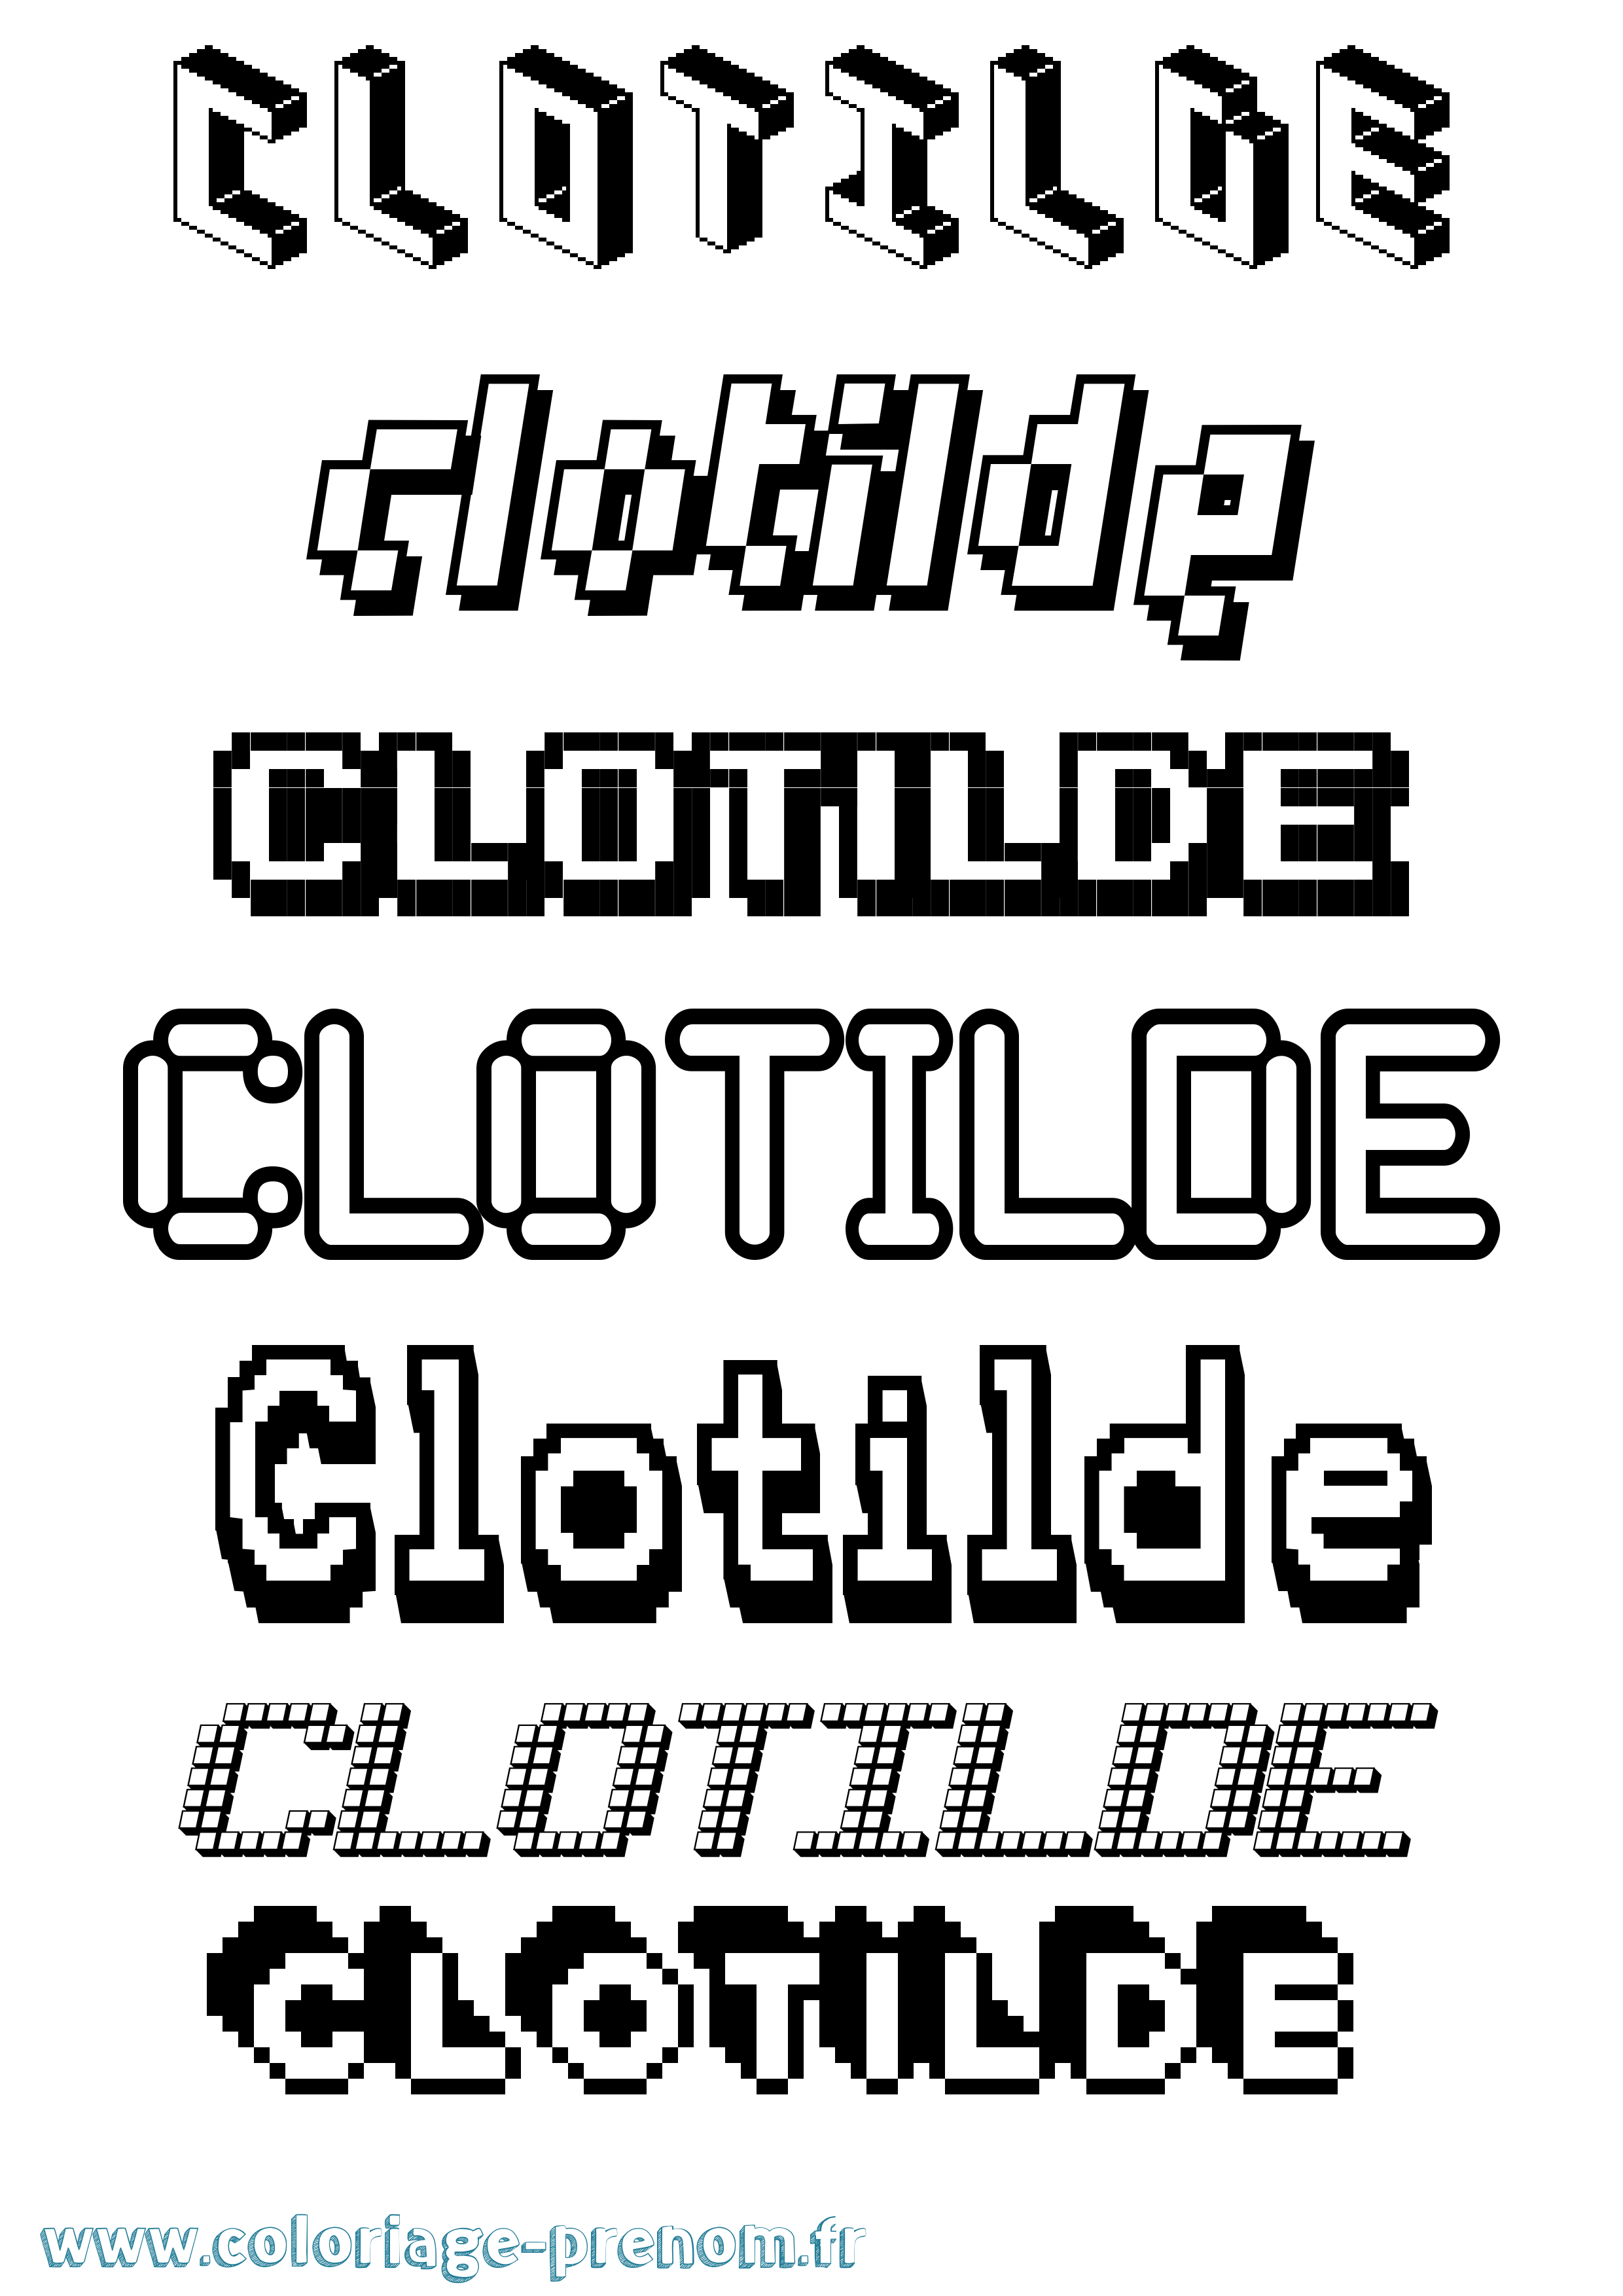 Coloriage prénom Clotilde Pixel